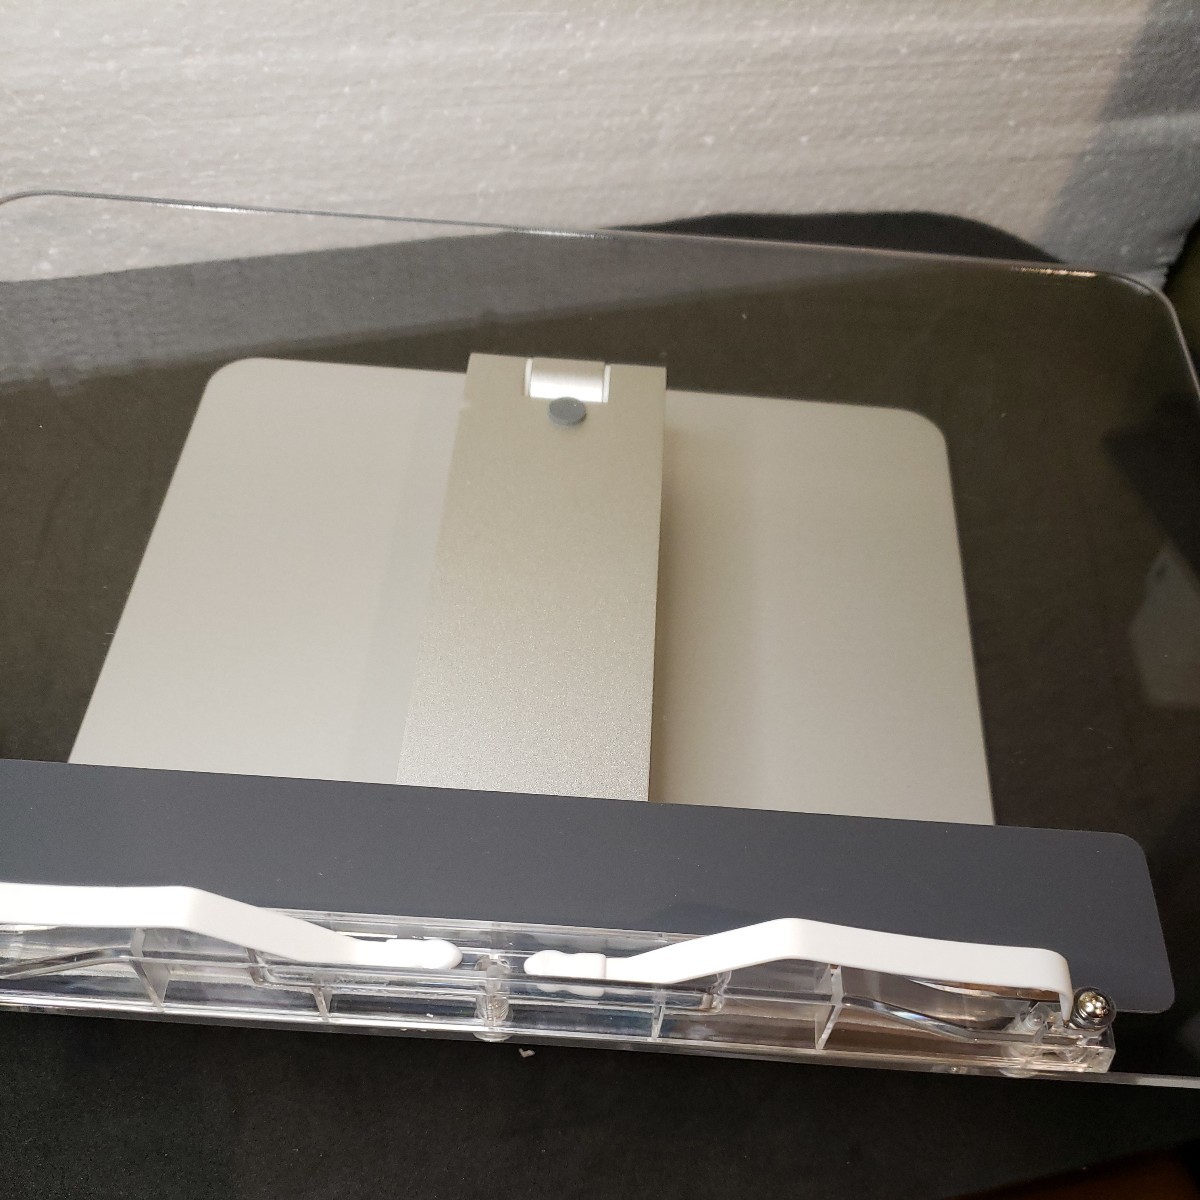 SupeDesk ブックスタンド 卓上 ノートパソコンスタンド 回転 アクリル アルミ台座 折りたたみ式 360度回転 書見台 倒れない 厚い本 透明感 _画像7